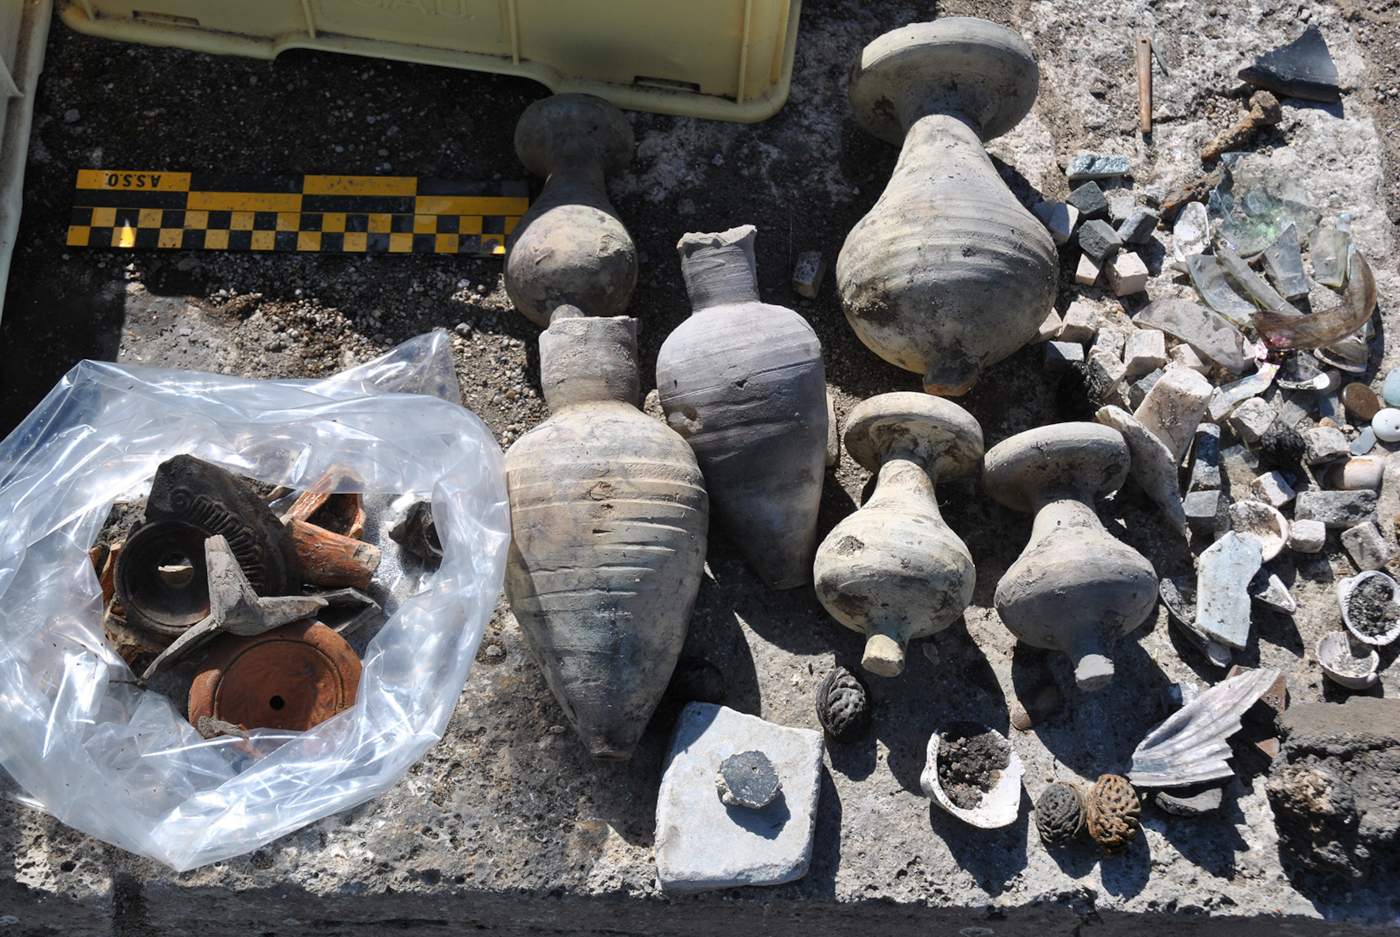 Gut erhaltene antike Funde von Gegenständen aus dem kaiserlichen Leben im archäologischen Park von Ostia Antica